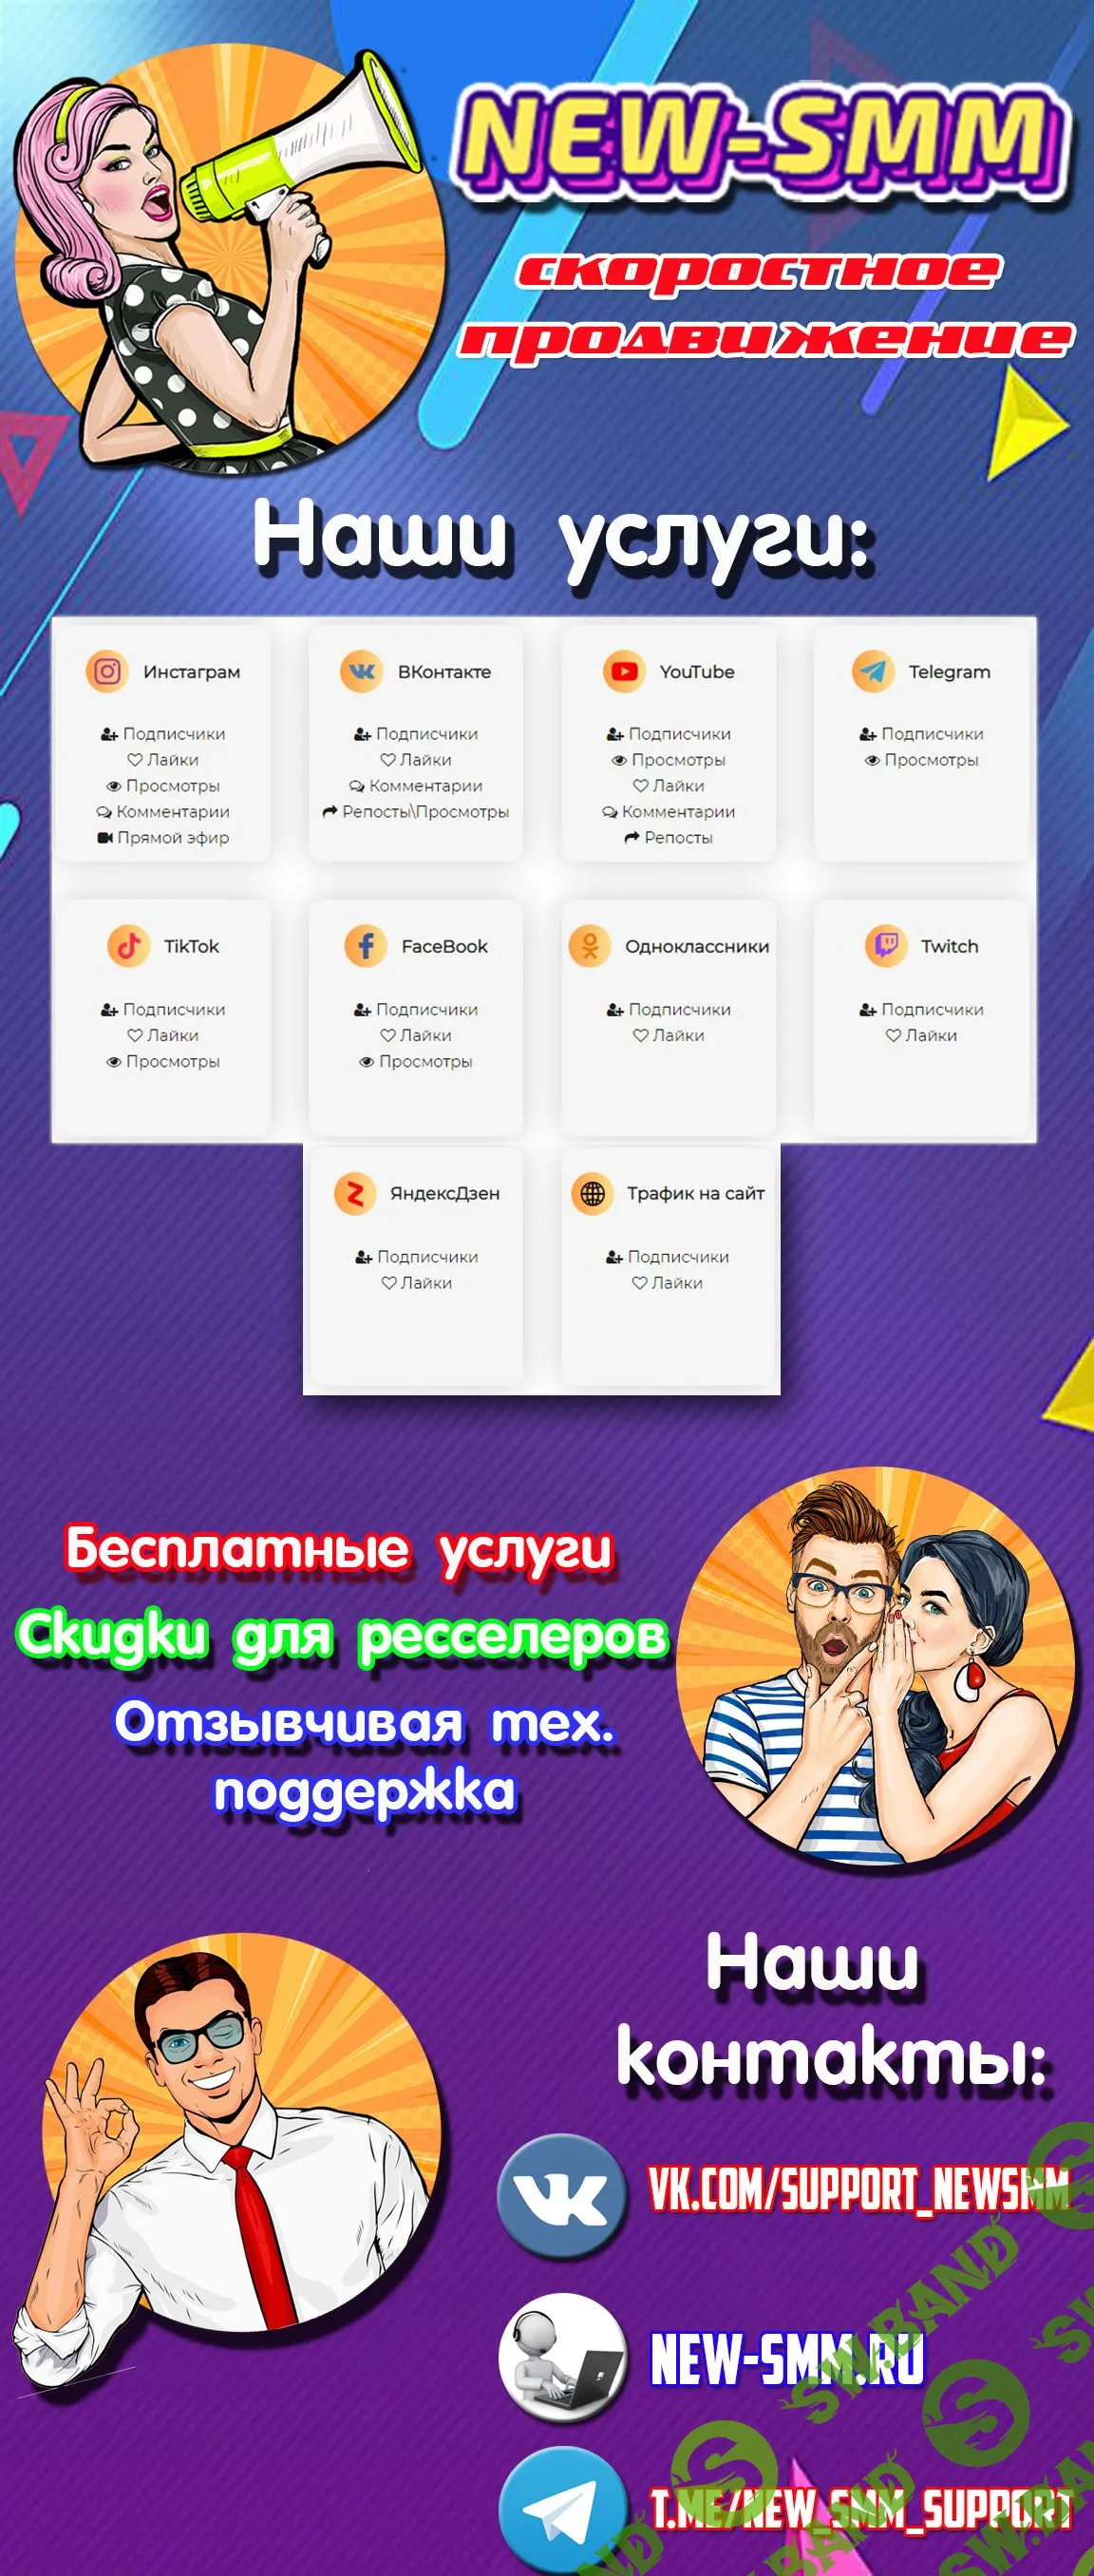 Продвижение в социальных сетях new-smm.ru (Вконтатке, Инстаграм, Ютуб, Телеграмм, трафик на сайт)